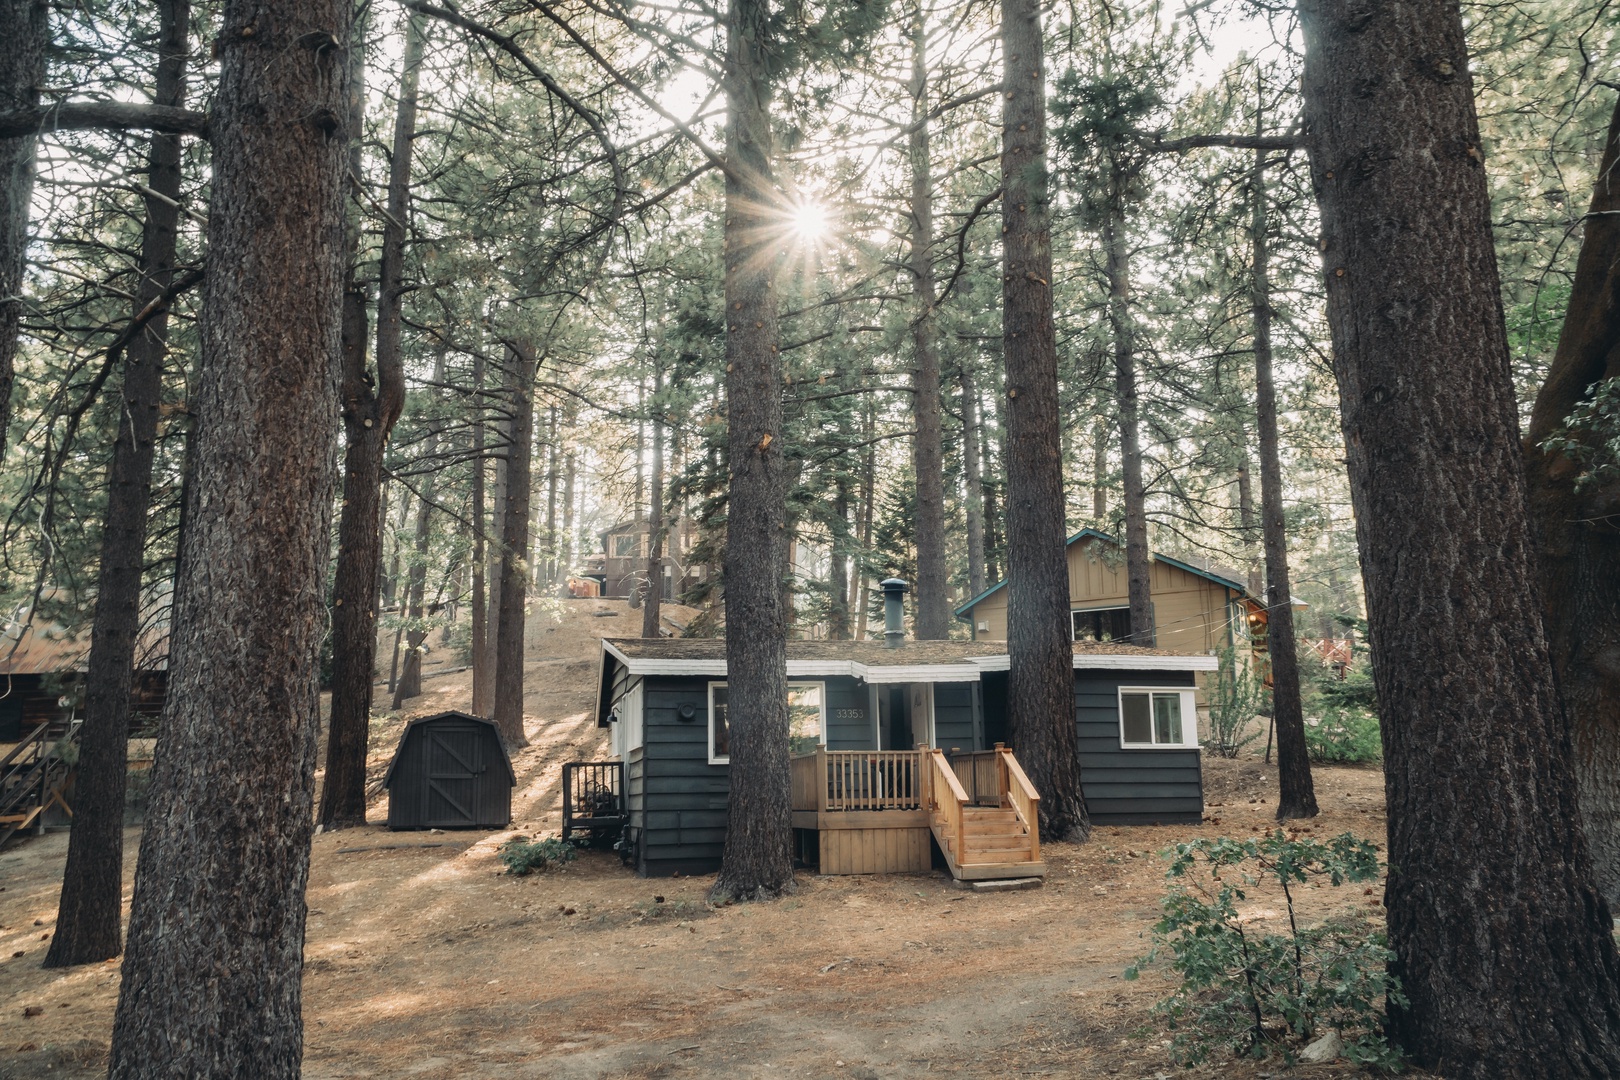 A cozy cabin getaway awaits you